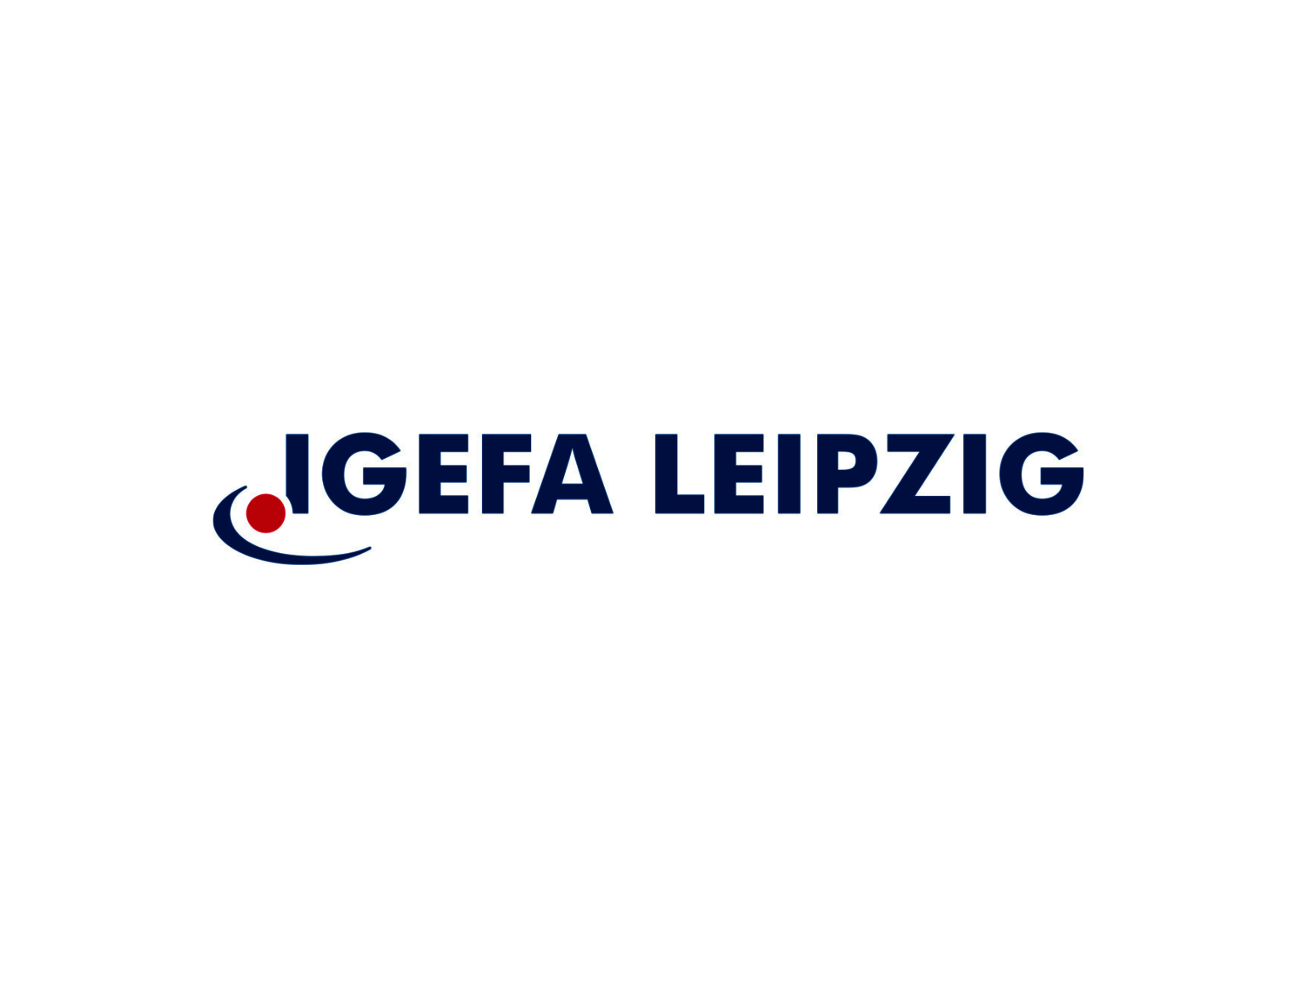 Igefa__Logo